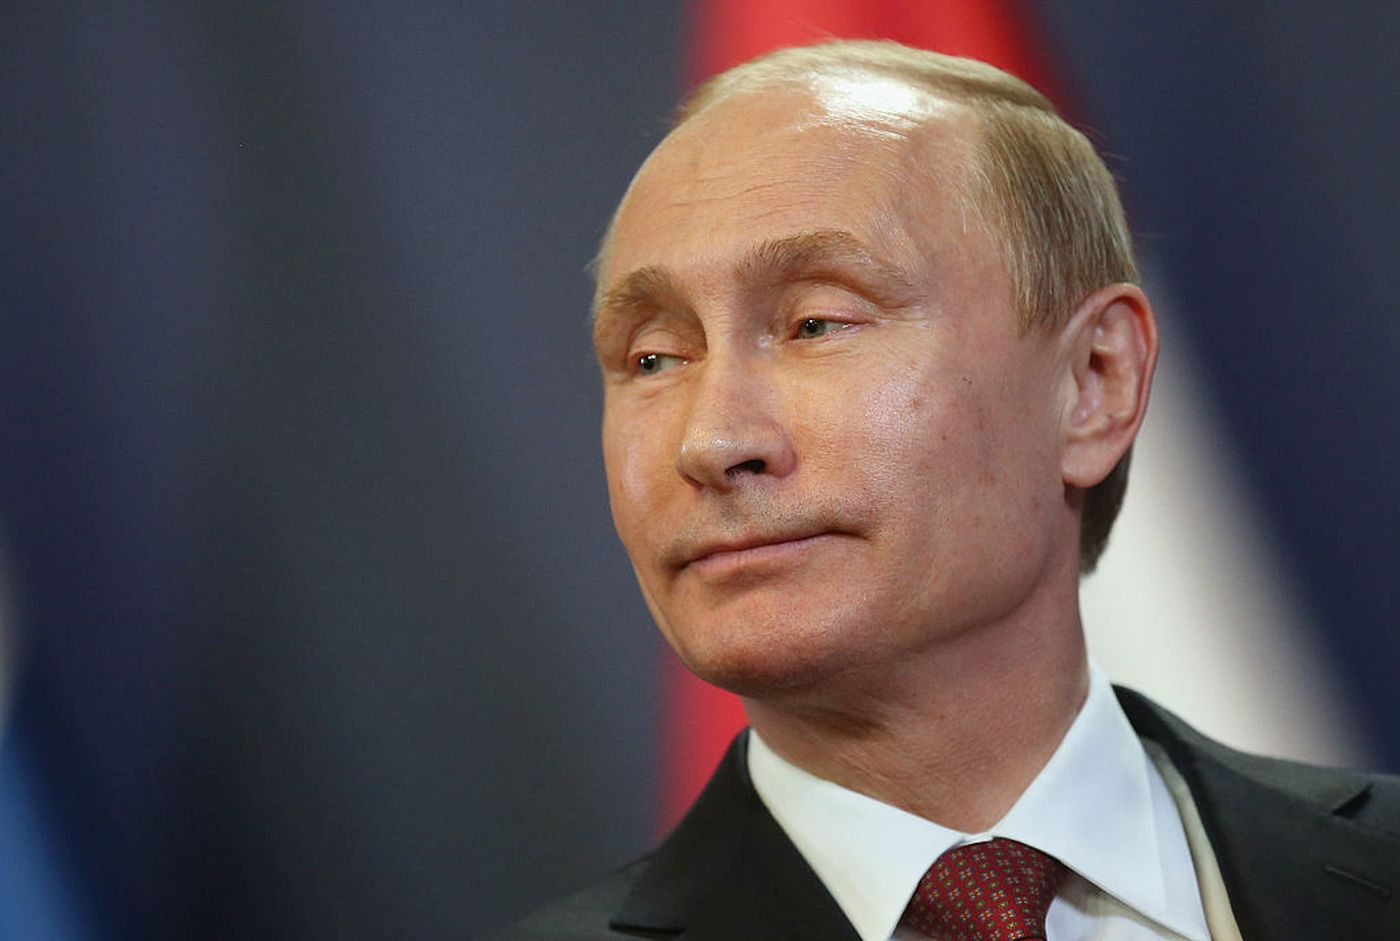 Internauci byli wściekli, więc Twitter odblokował konto Putina